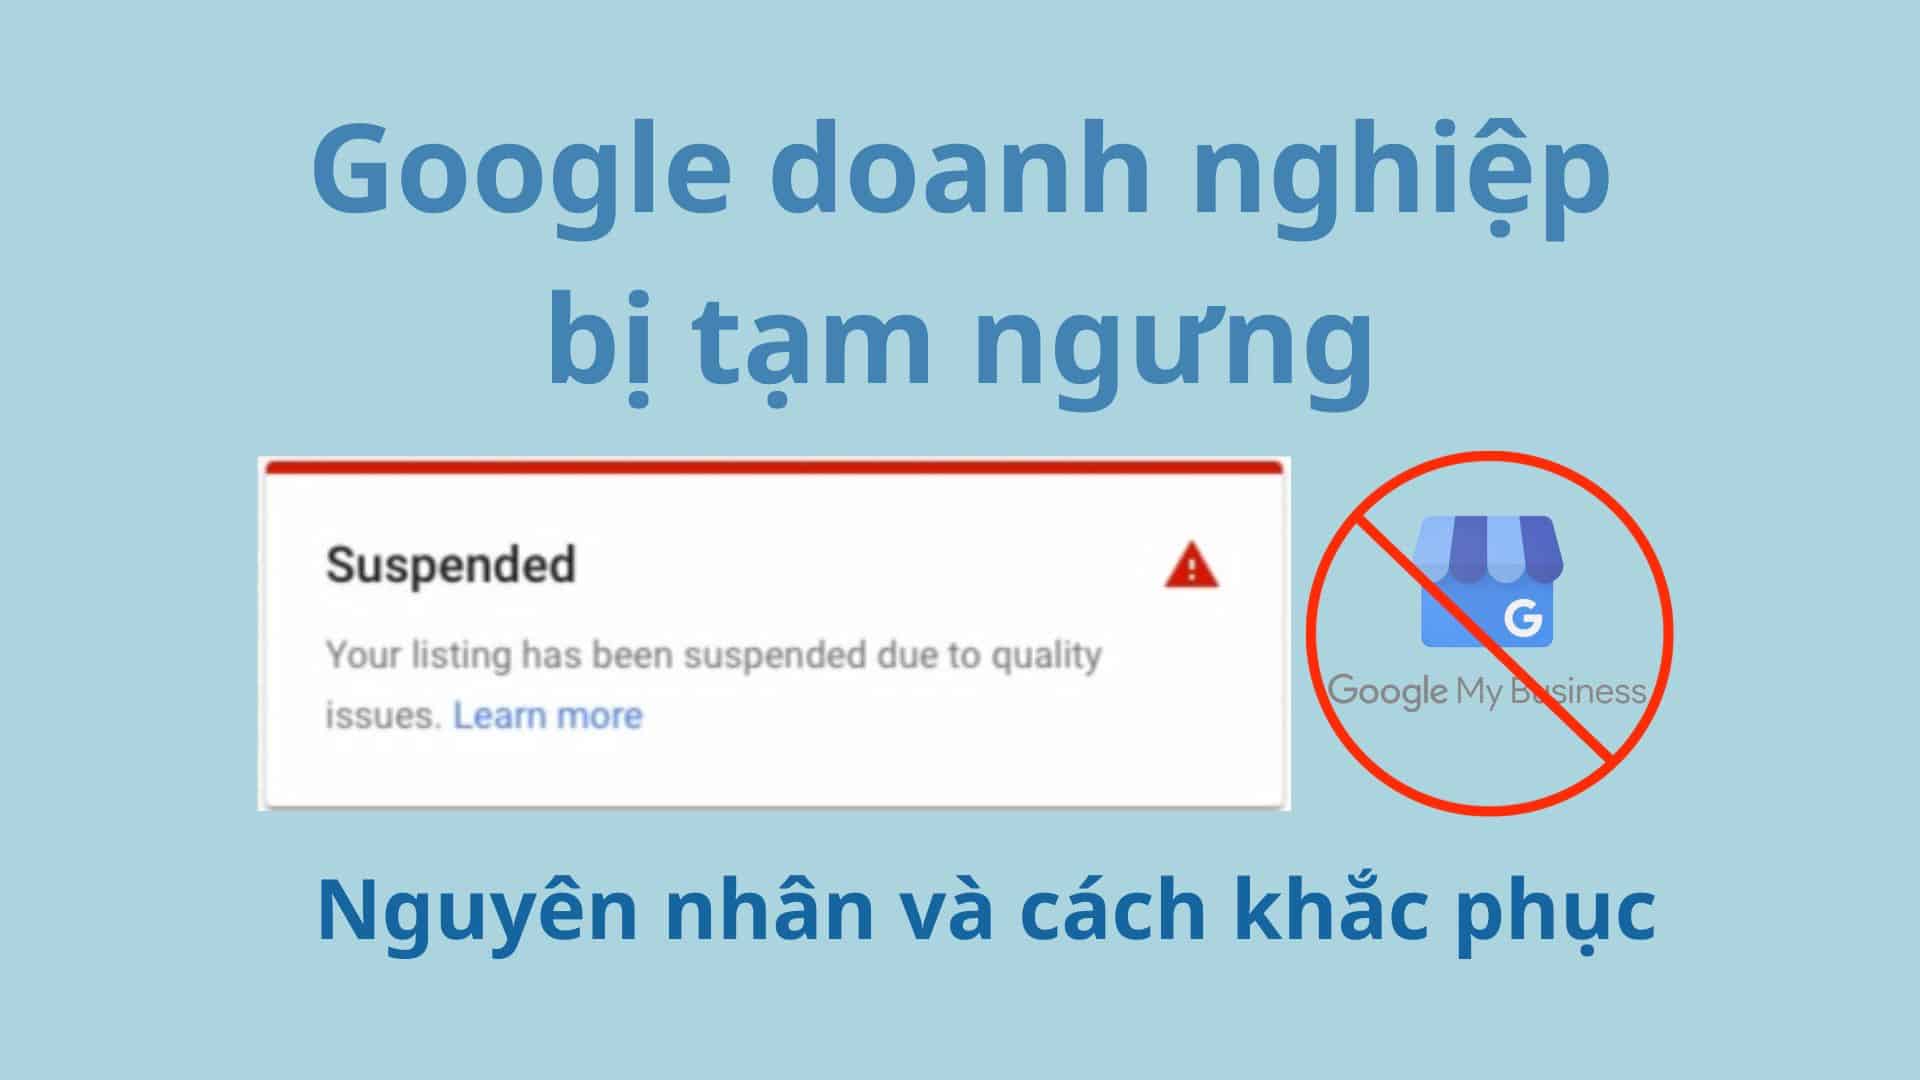 Google doanh nghiệp bị tạm ngưng